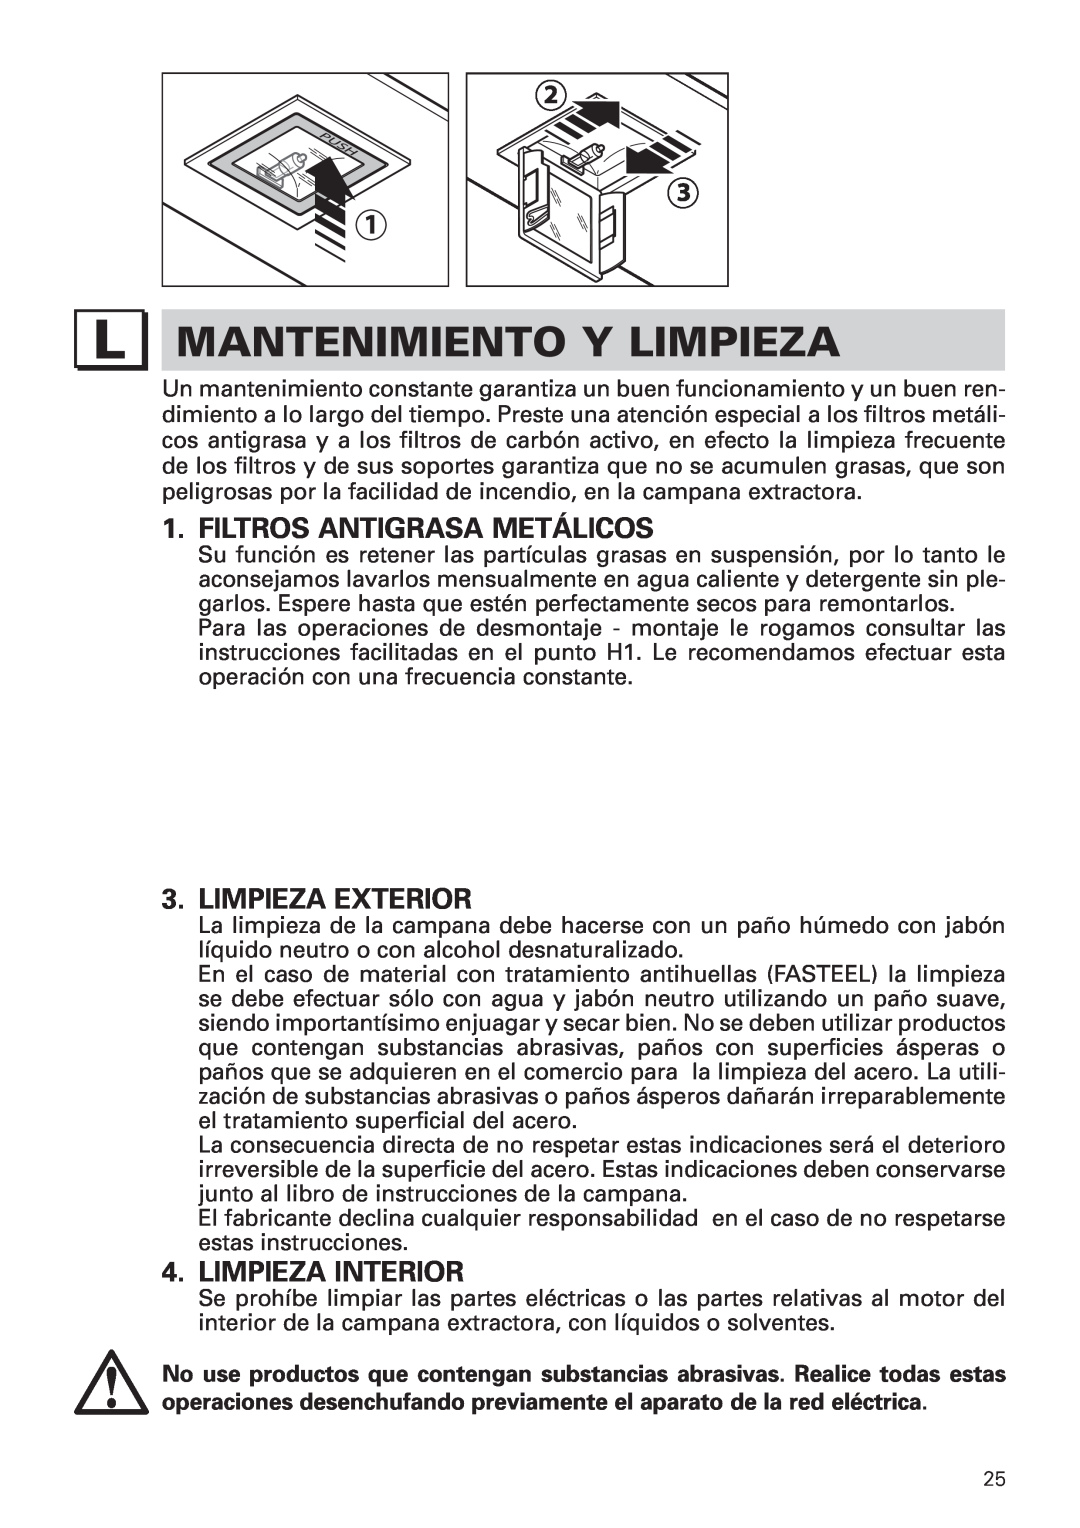 Bertazzoni KIN 36 PER X manual Mantenimiento Y Limpieza, Filtros Antigrasa Metálicos, Limpieza Exterior, Limpieza Interior 